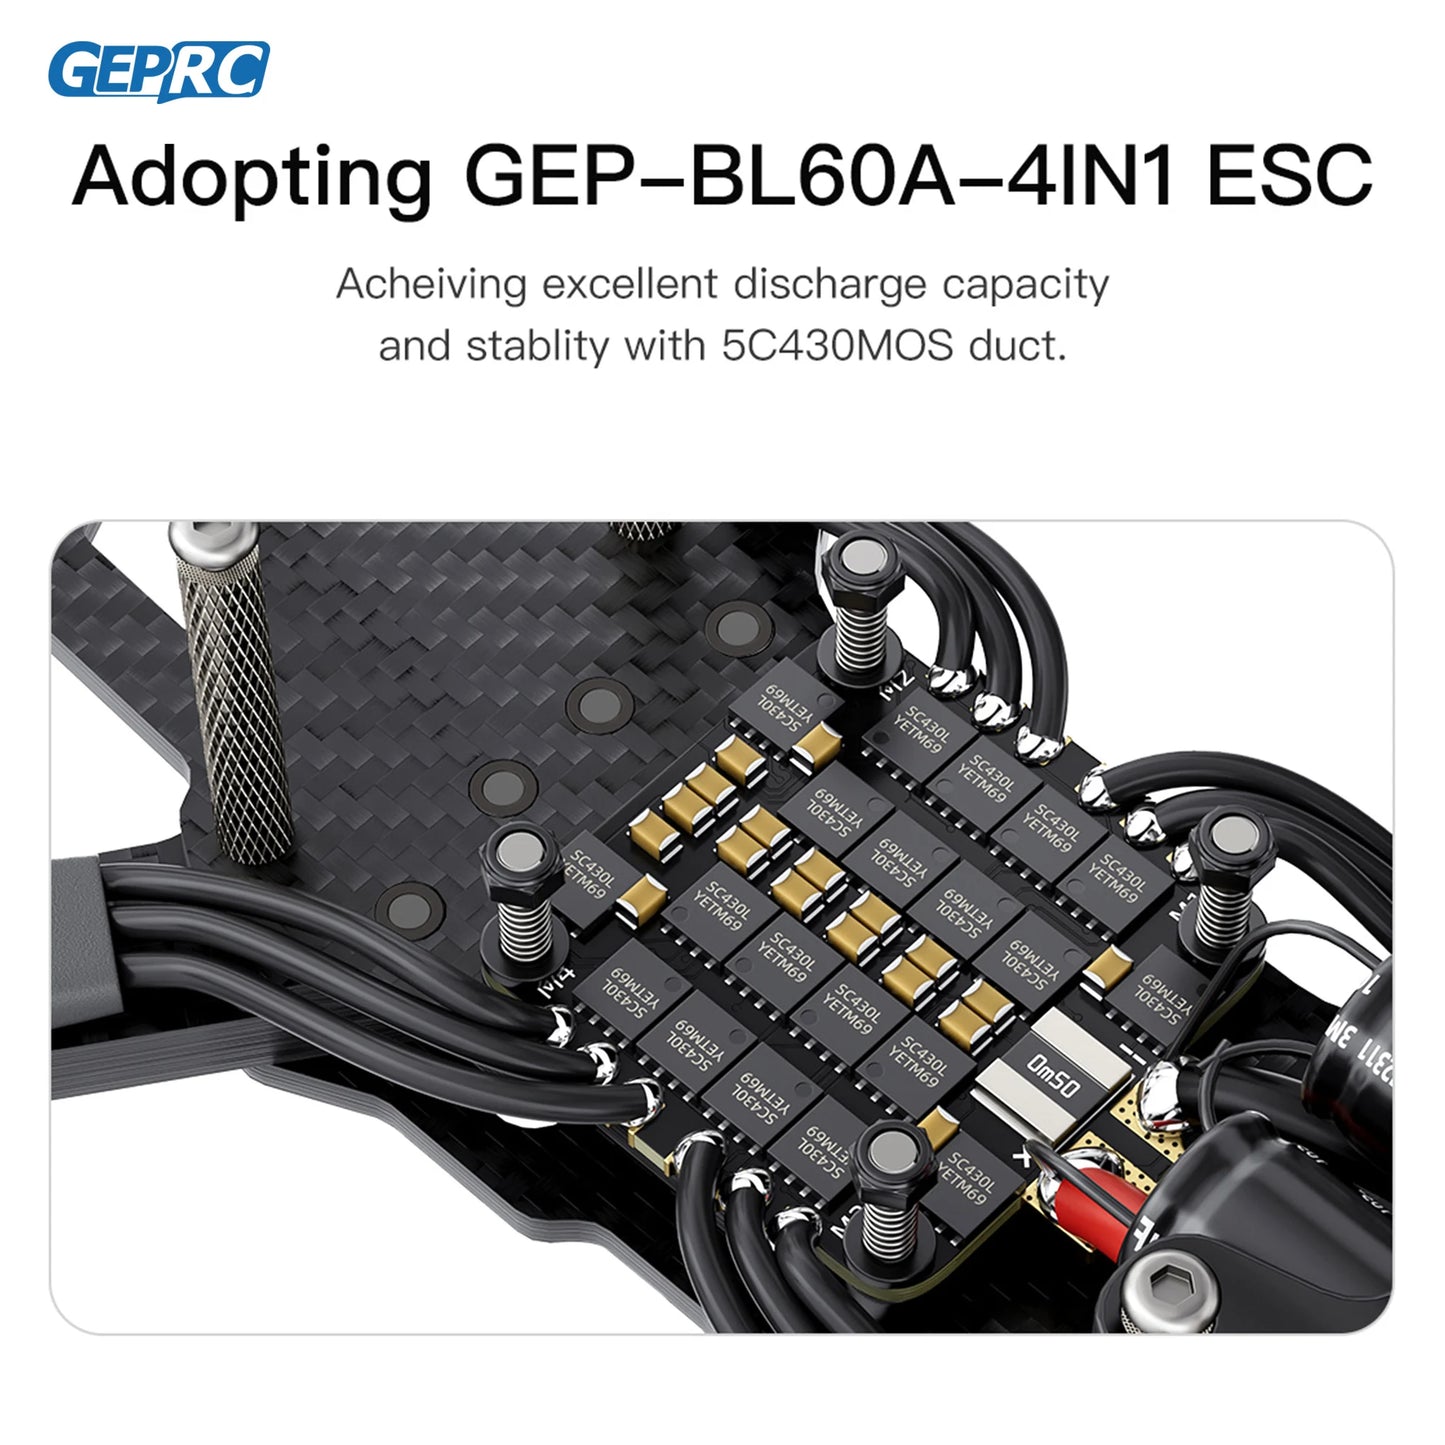 GEPRC Adopting GEP-BLGOA-4INI ESC Ache